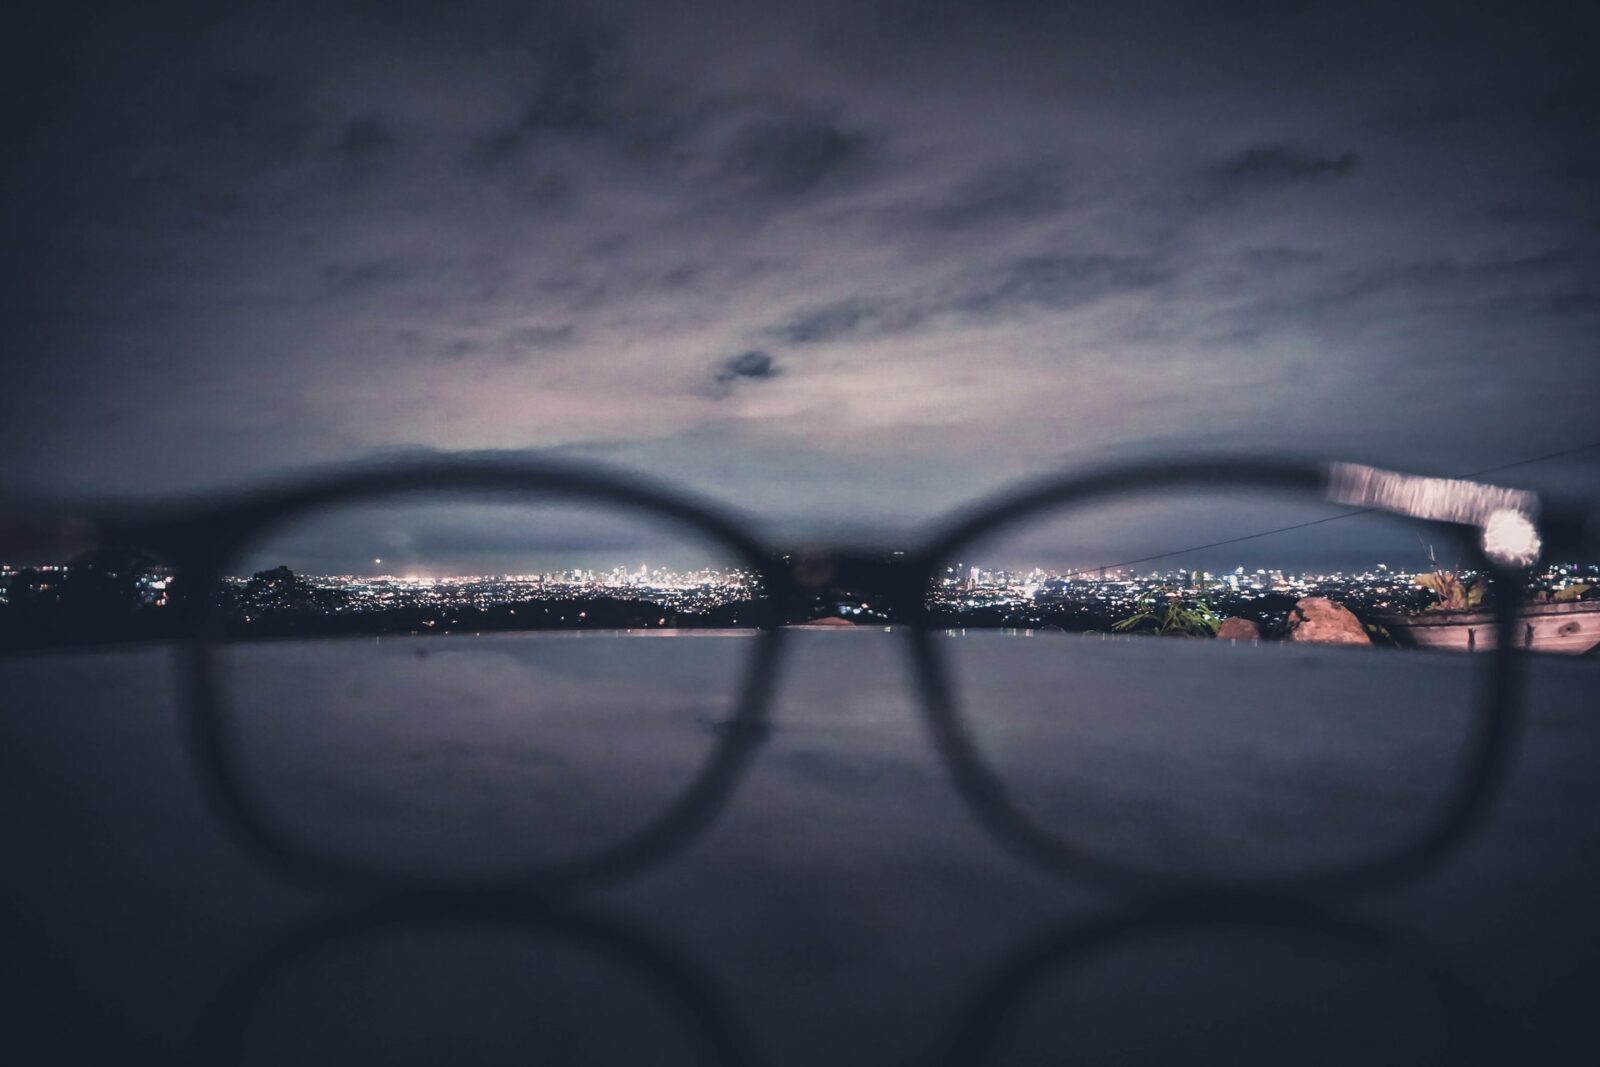 looking through eyeglasses